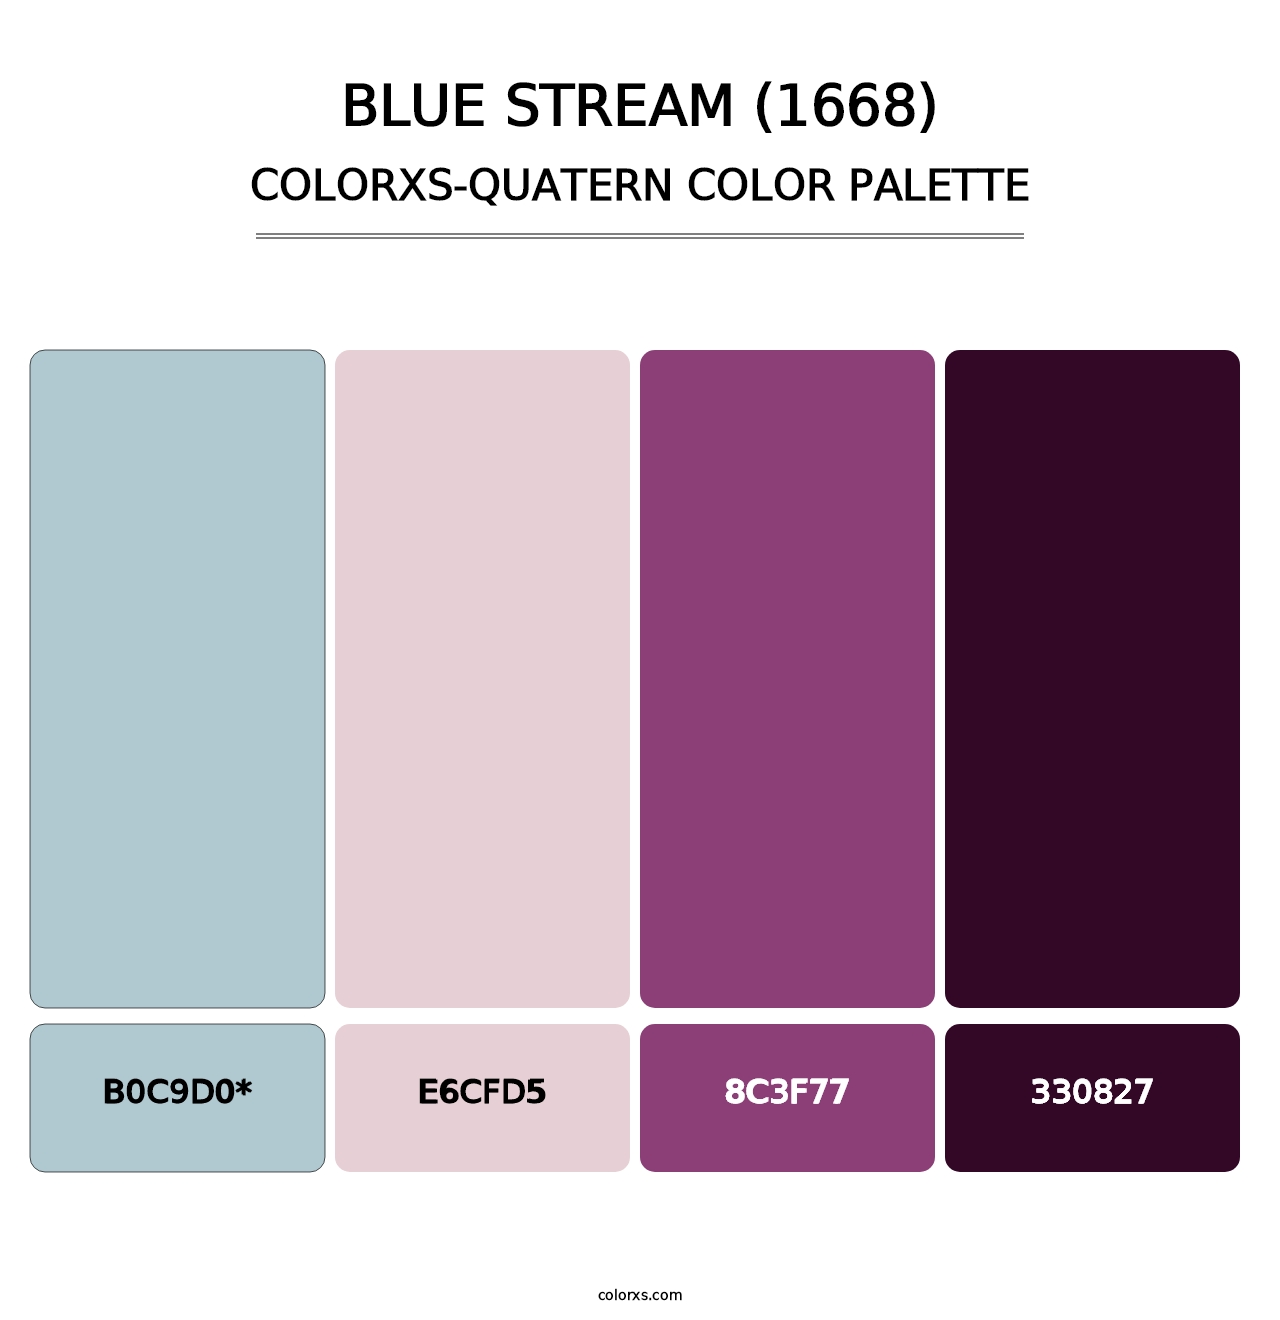 Blue Stream (1668) - Colorxs Quatern Palette